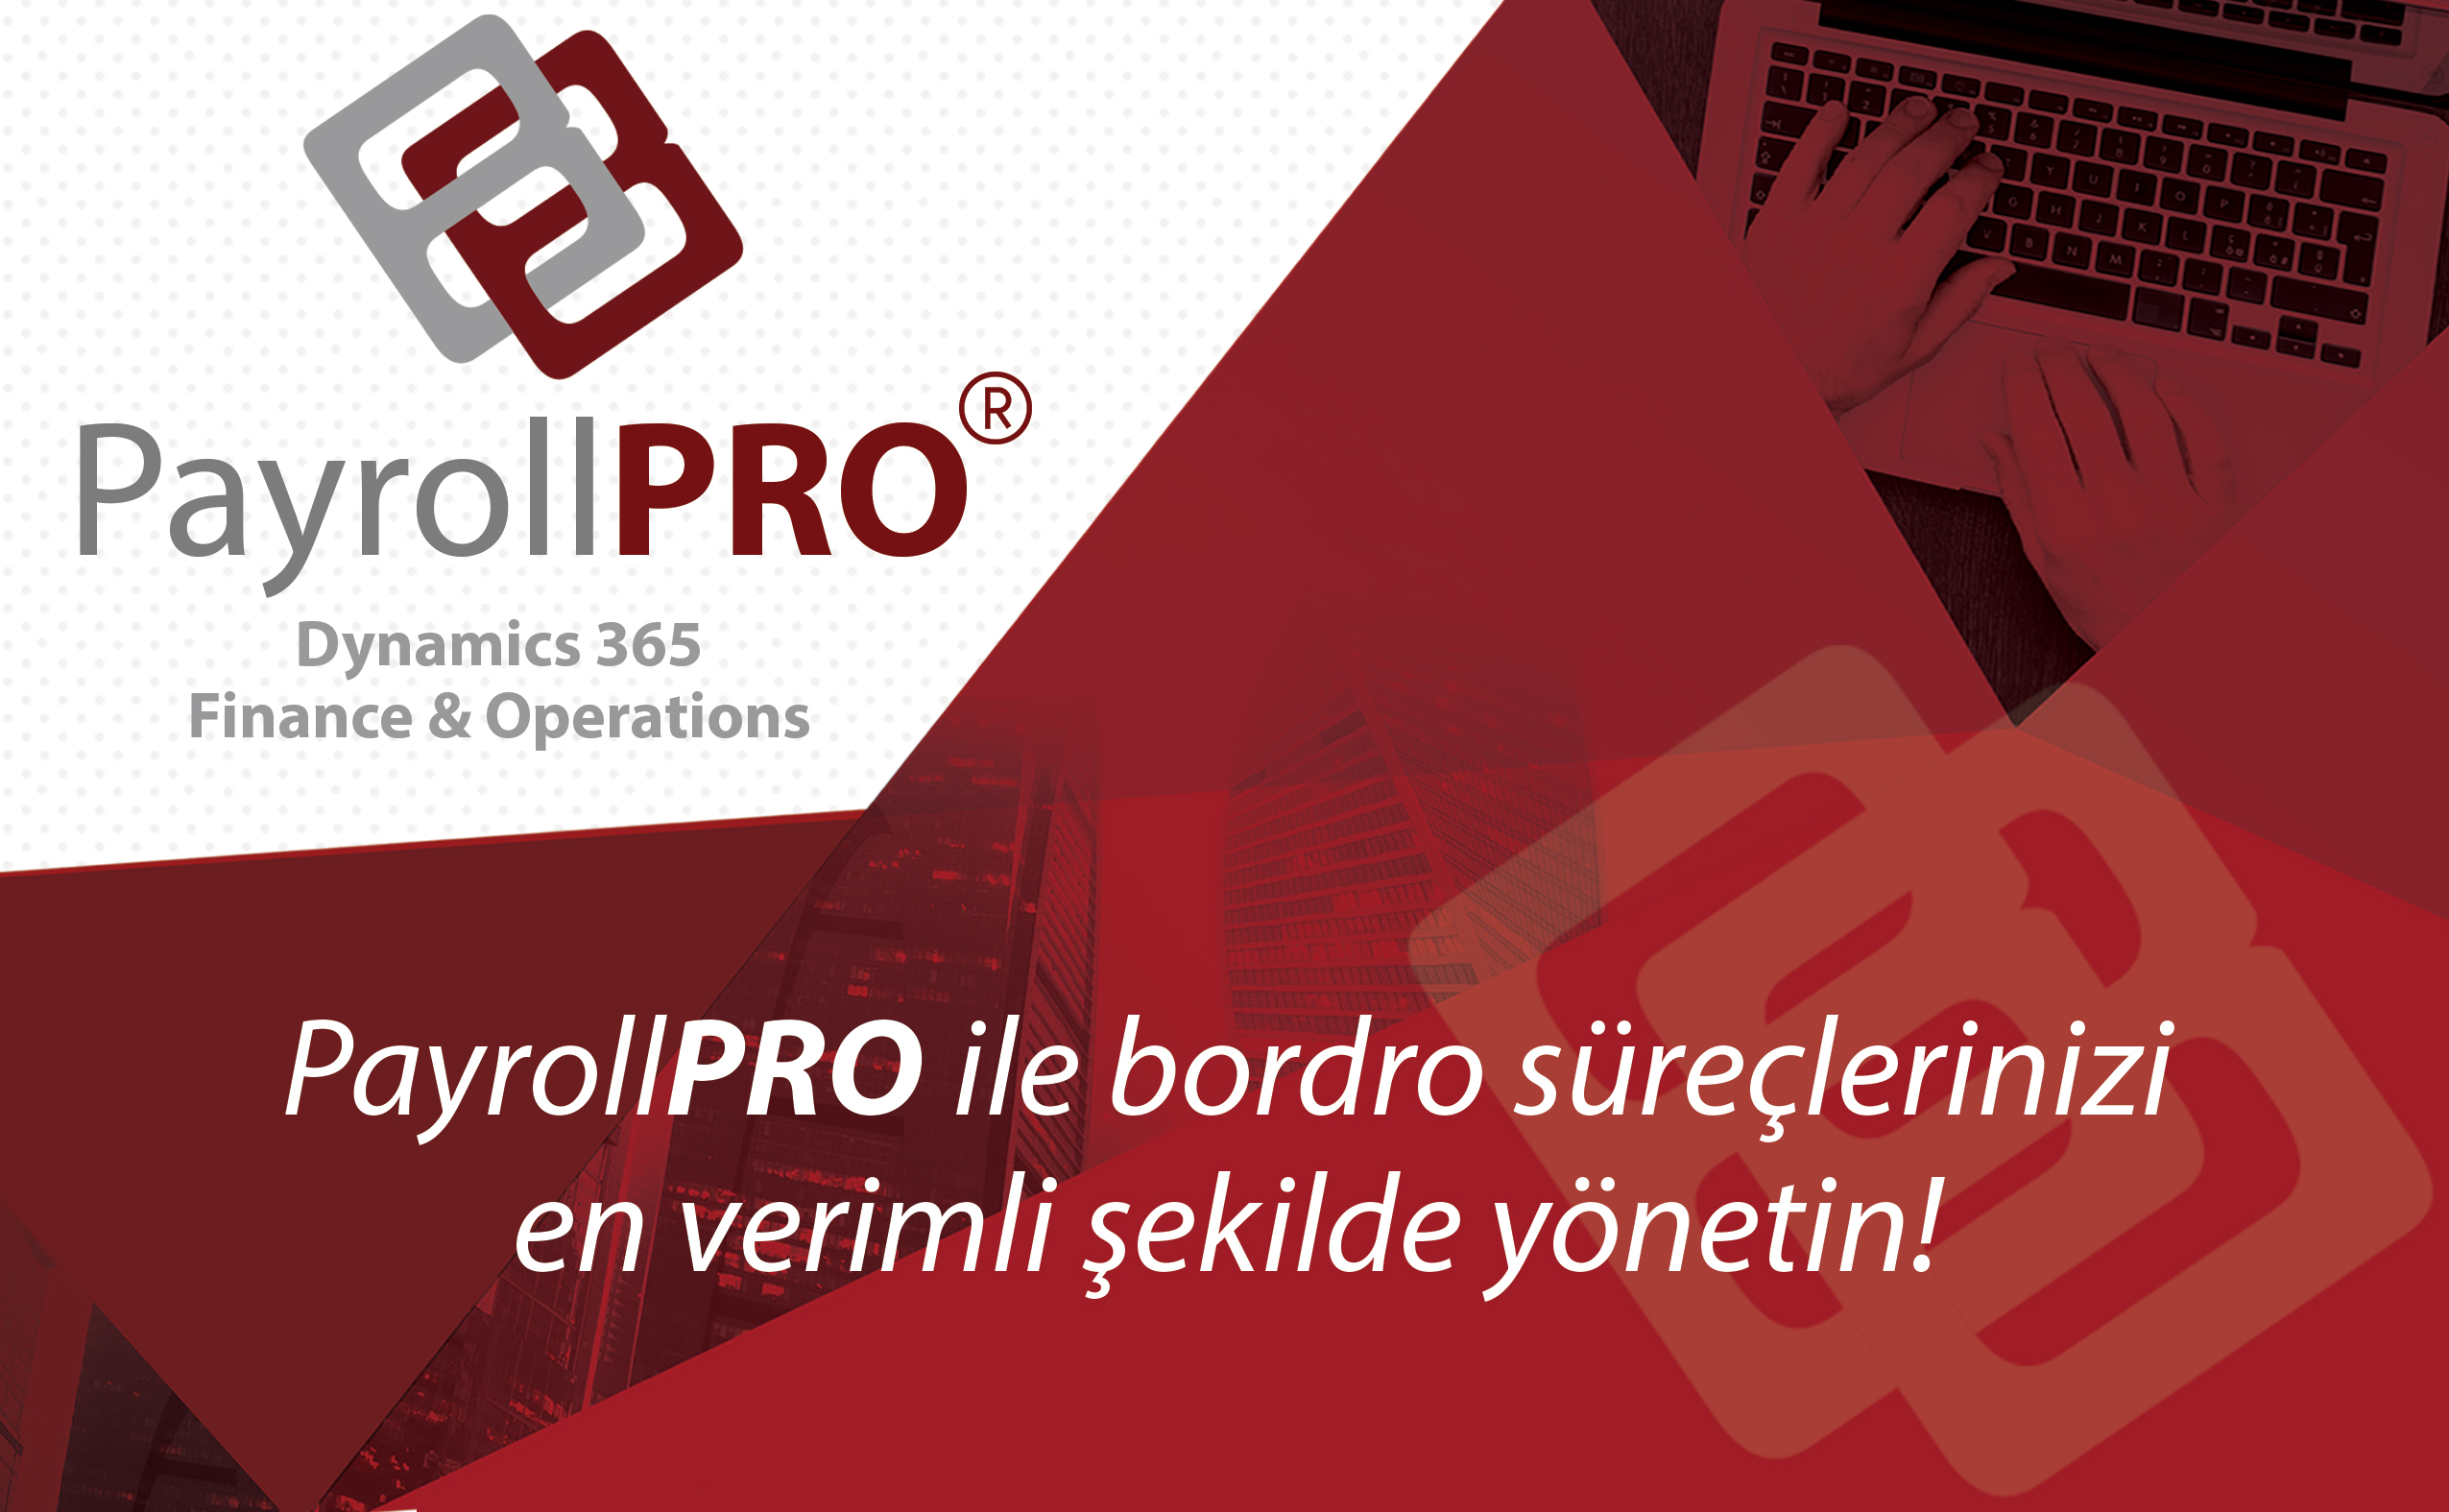 PayrollPRO ile Bordro Süreçlerinizi Yönetmek Artık Çok Daha Kolay!